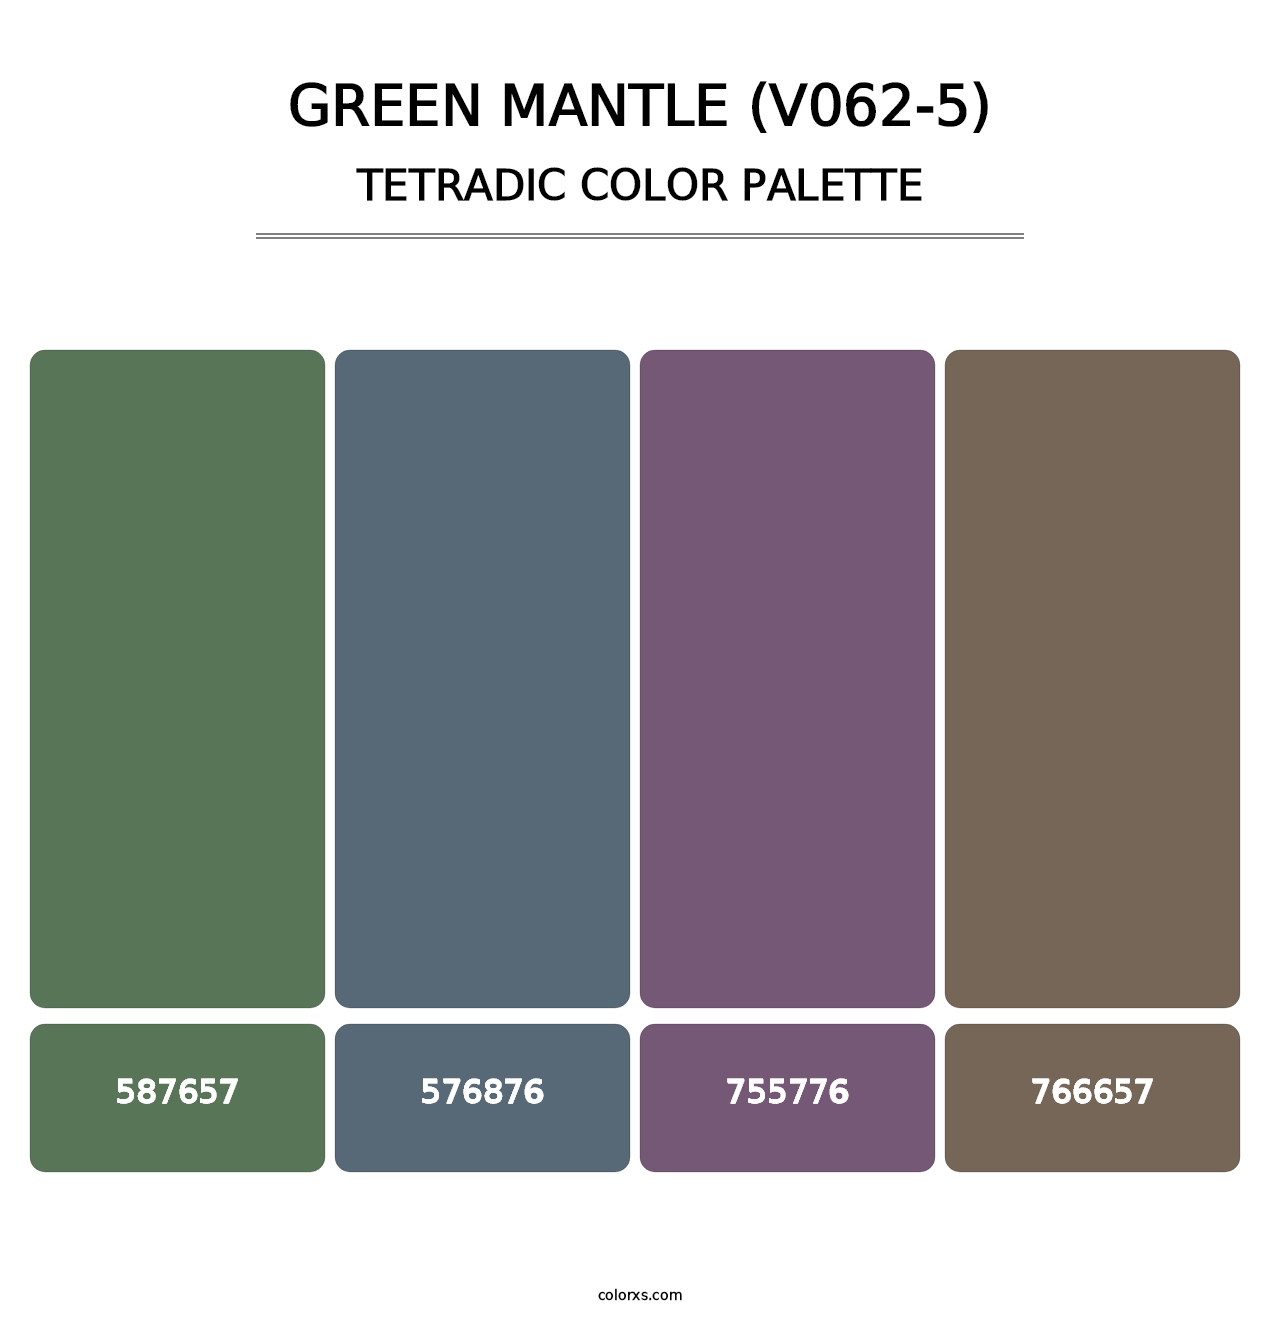 Green Mantle (V062-5) - Tetradic Color Palette